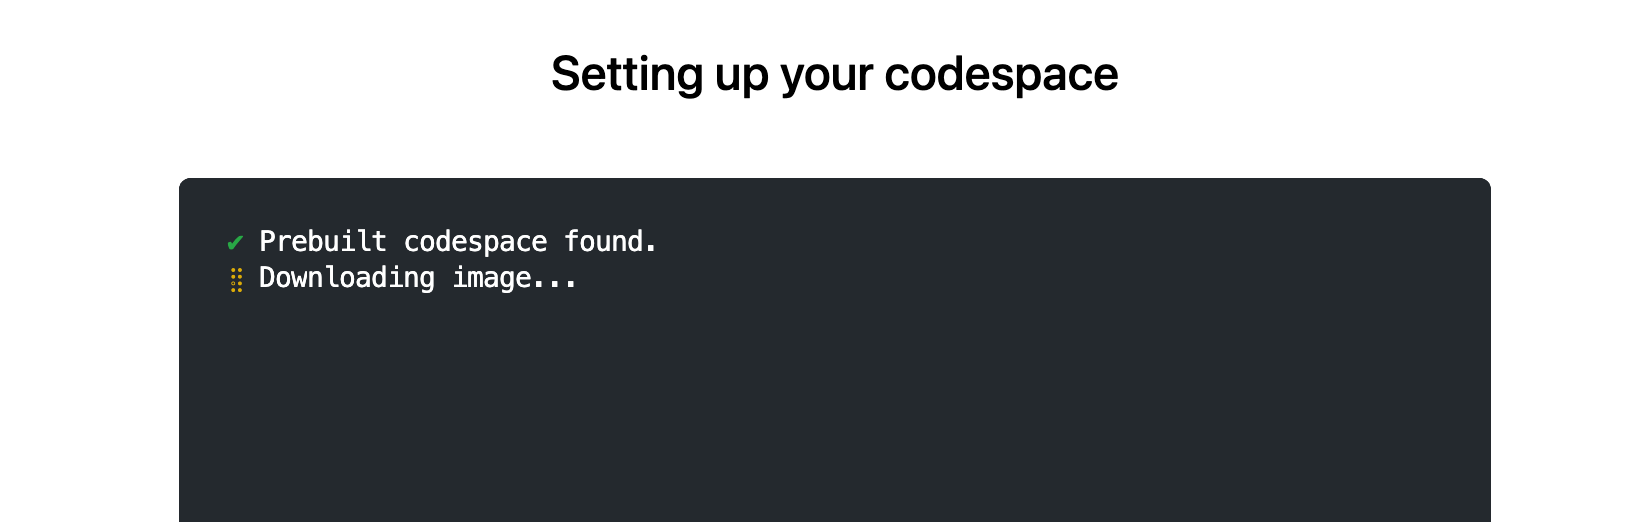 El mensaje de 'se encontró un codespace precompilado'